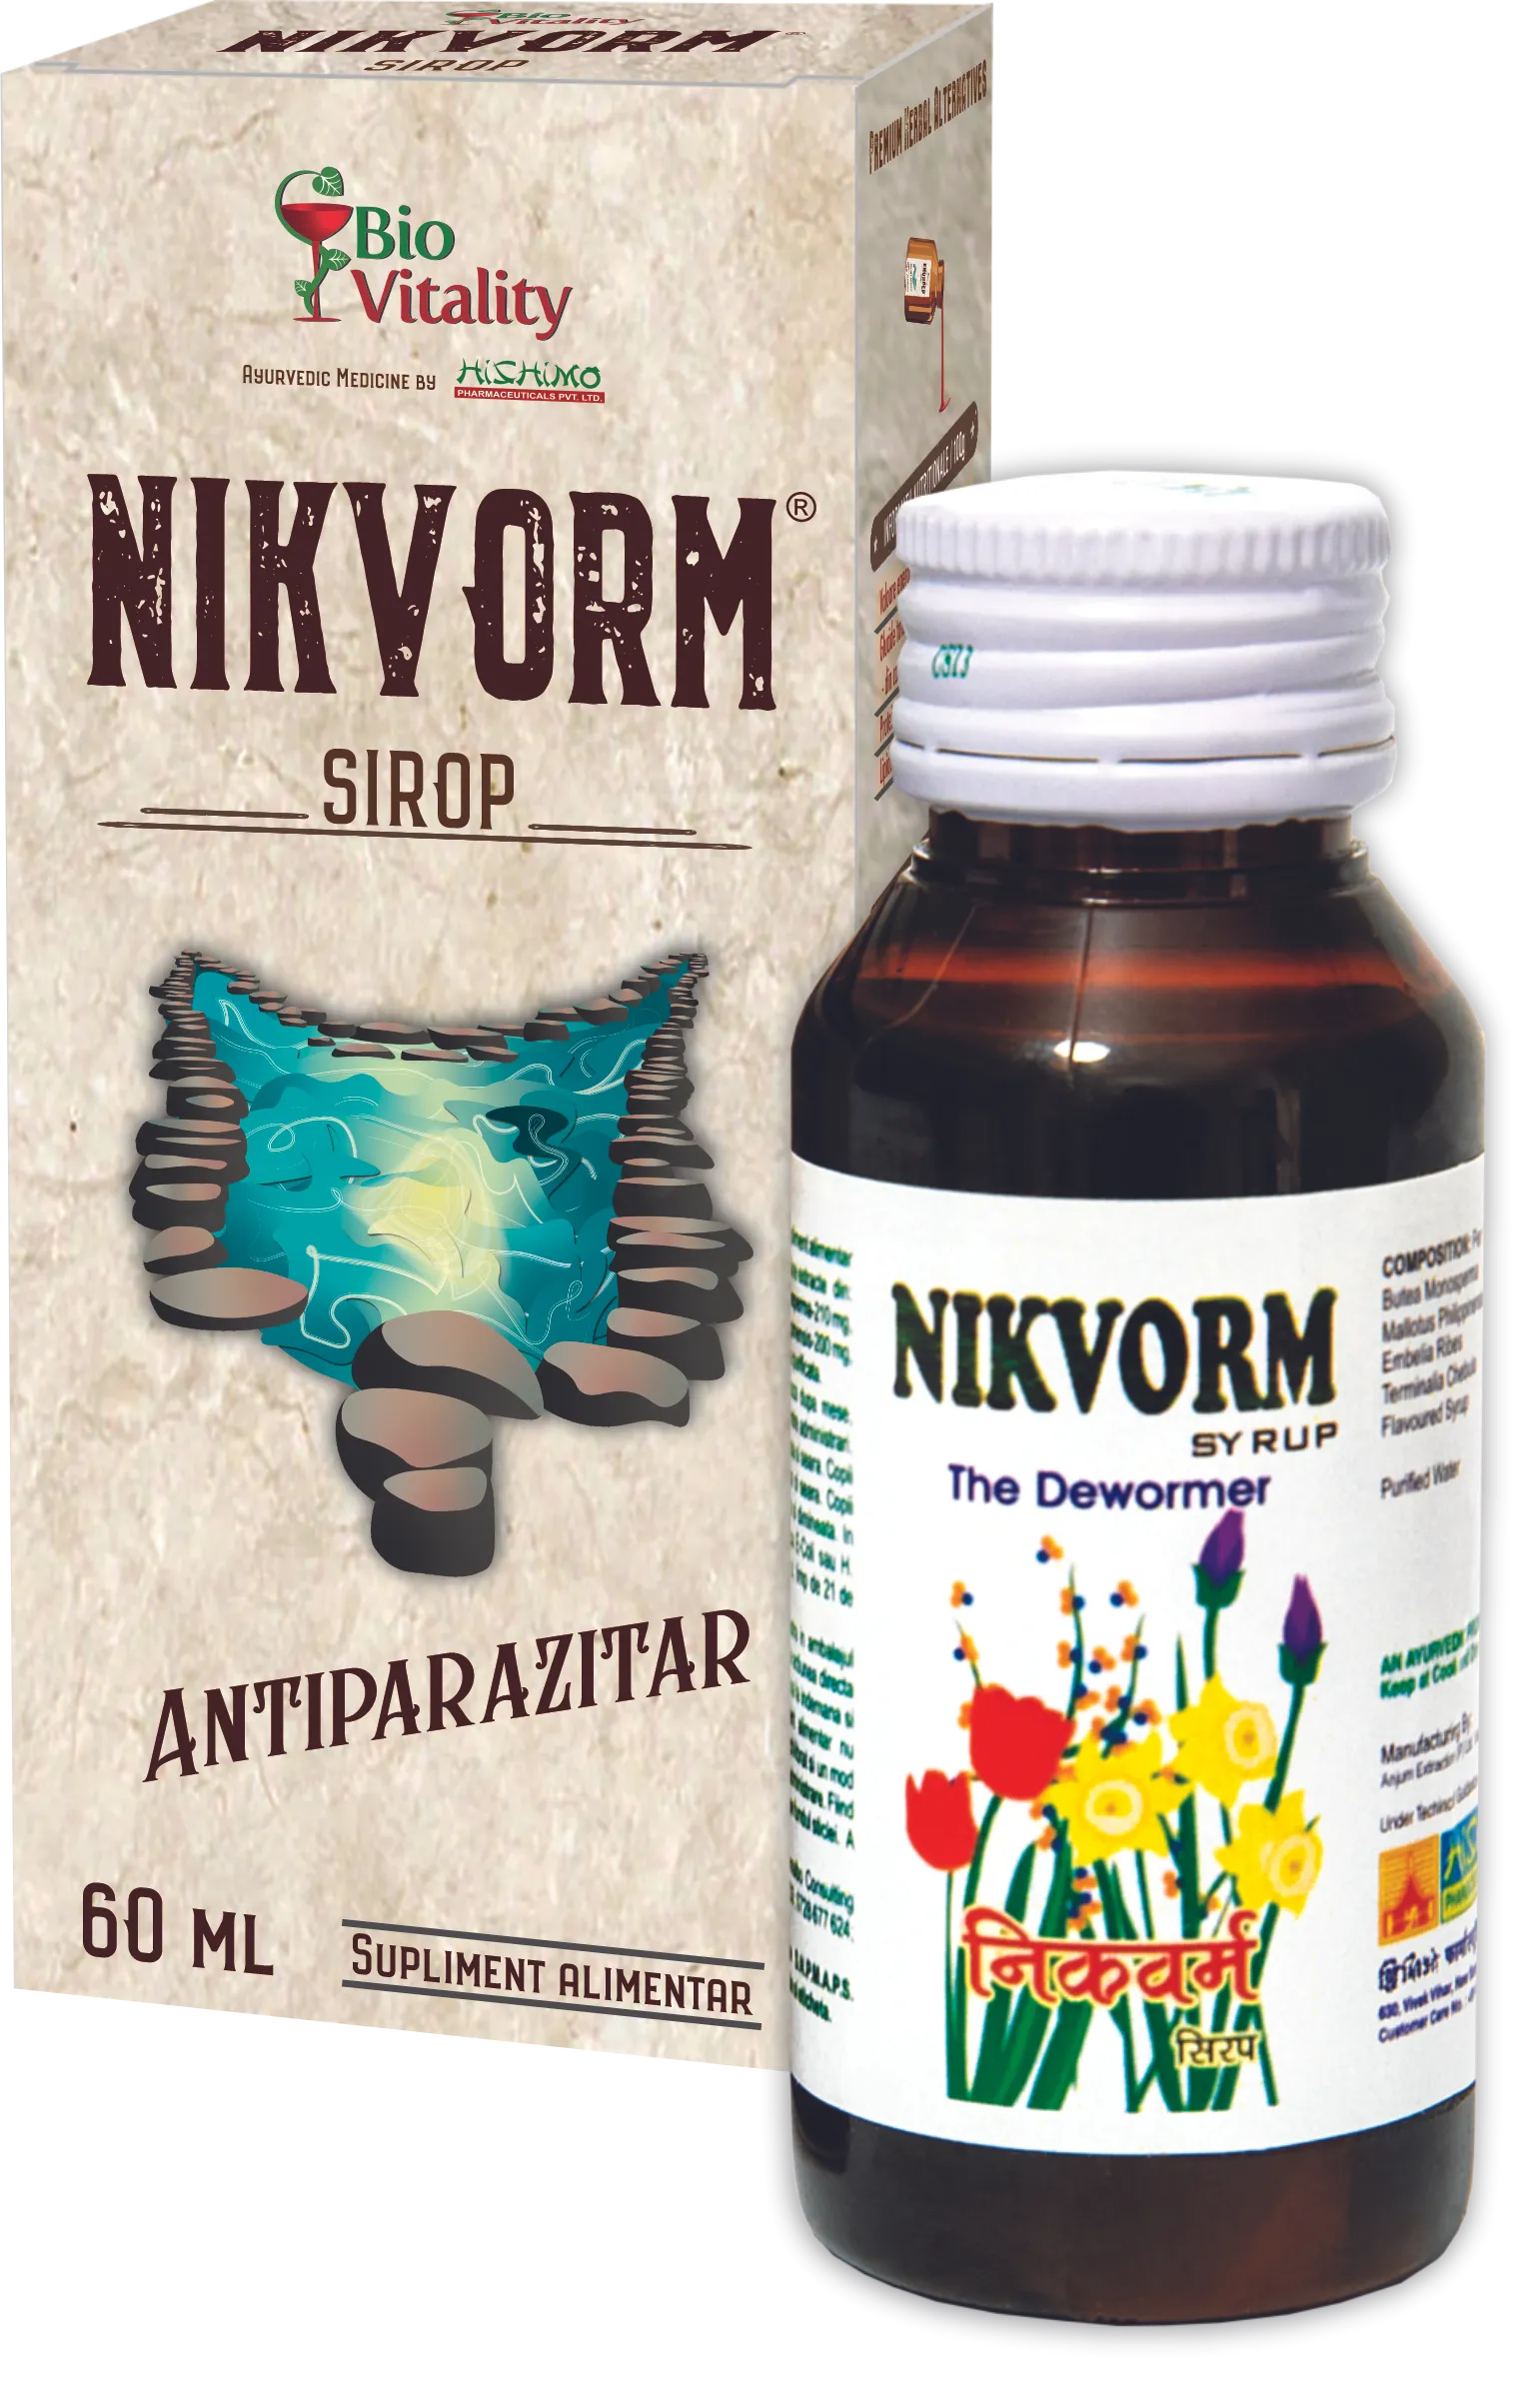 Nikvorm sirop pentru eliminarea parazitilor intestinali, 60 ml, Bio Vitality